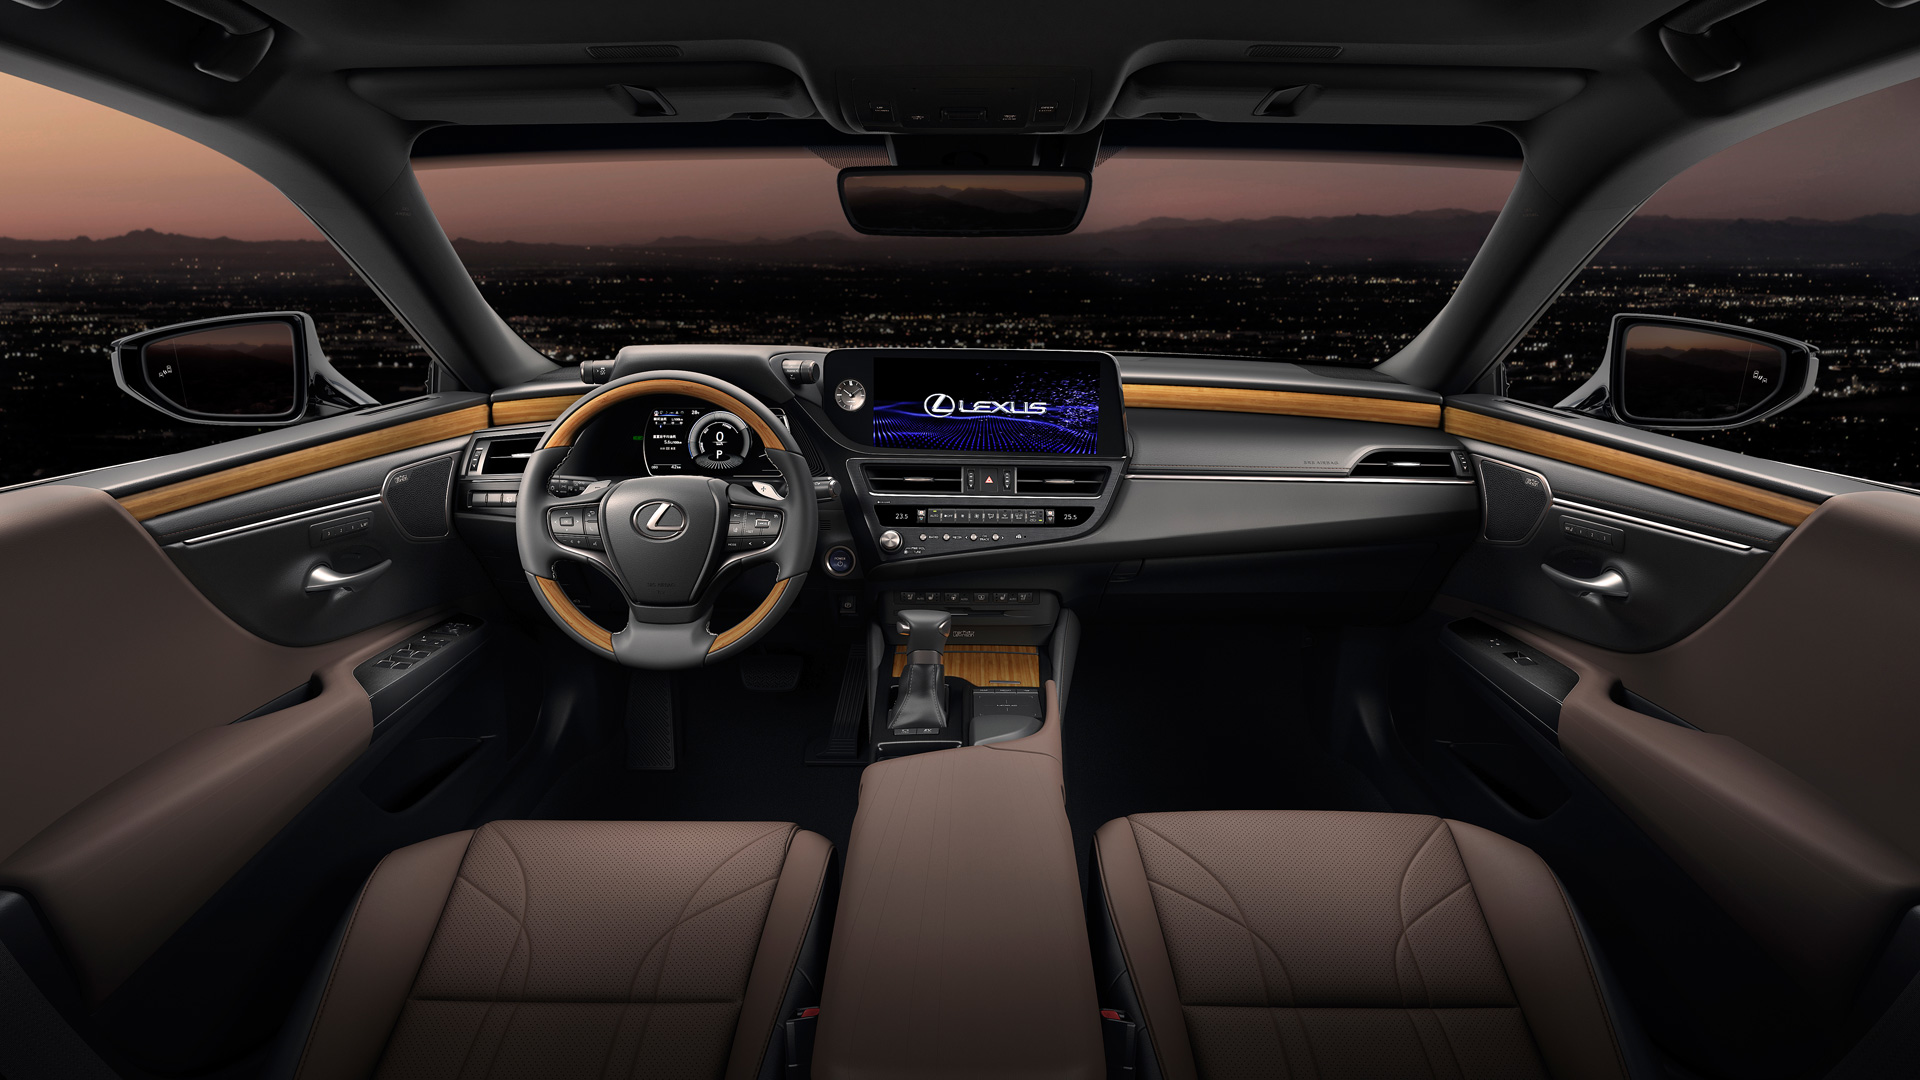 The Lexus ES Dashboard